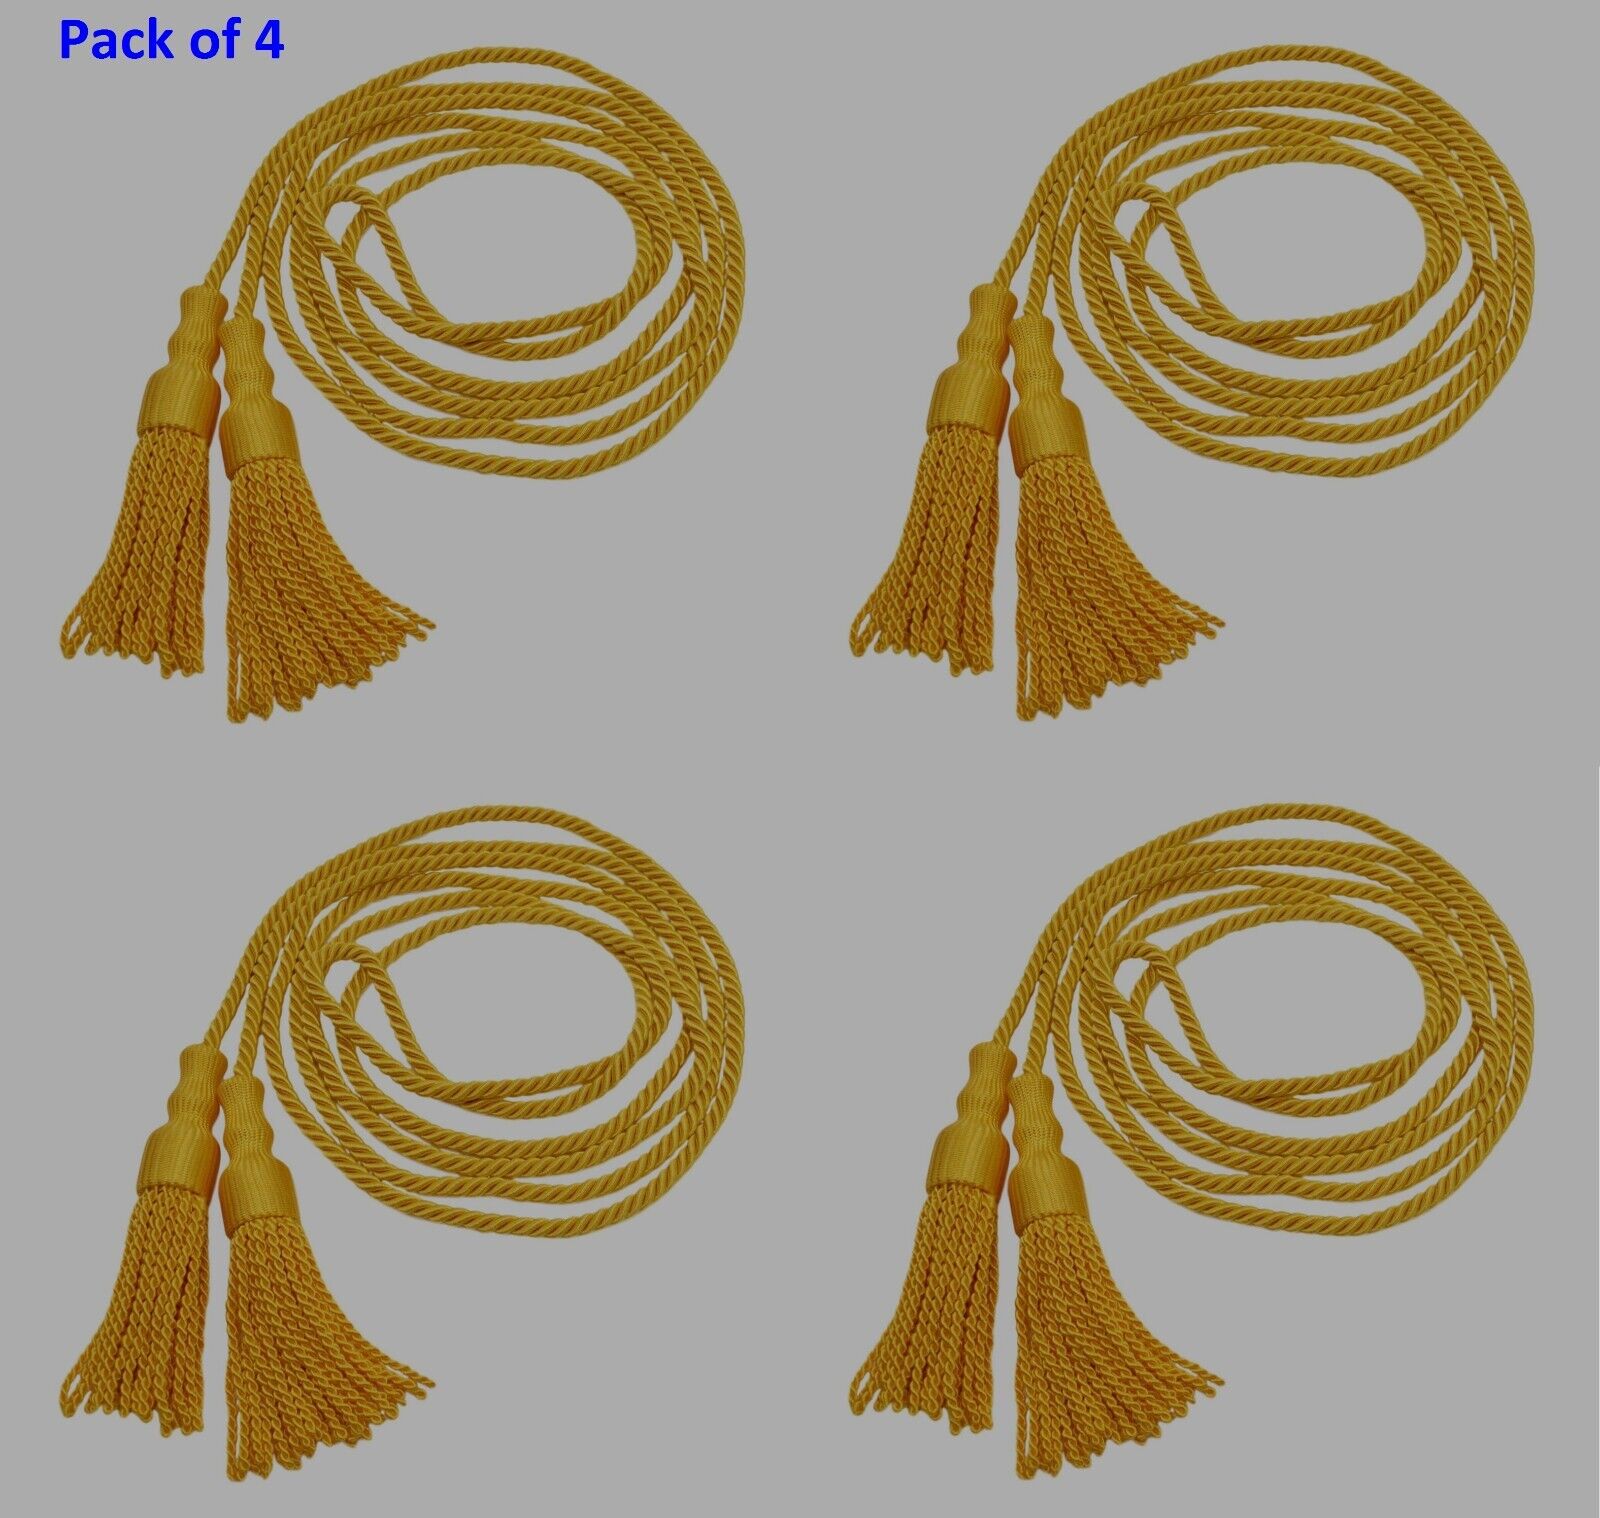 4-pk Tassel for Flag Banner 108" Spread 5/16" Cord + Two 5" Tassels Bullion Gold DecoPro